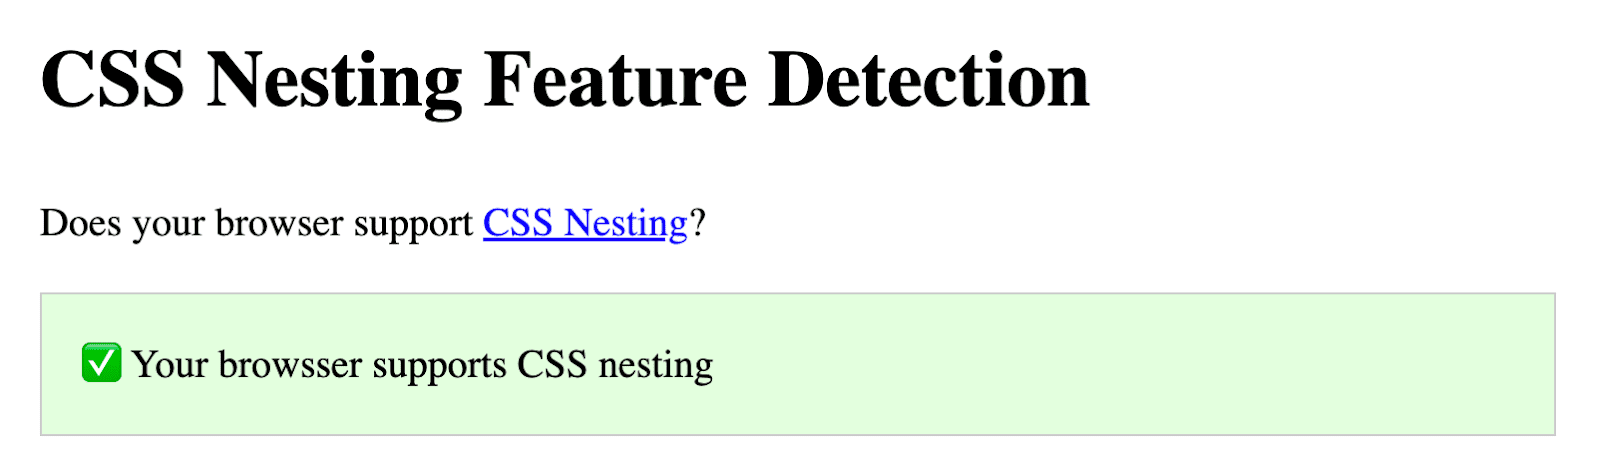 Uno screenshot della demo di Codepen di Bramus, in cui viene chiesto se il browser supporta la nidificazione dei CSS. Sotto questa domanda è presente una casella verde che indica il supporto.